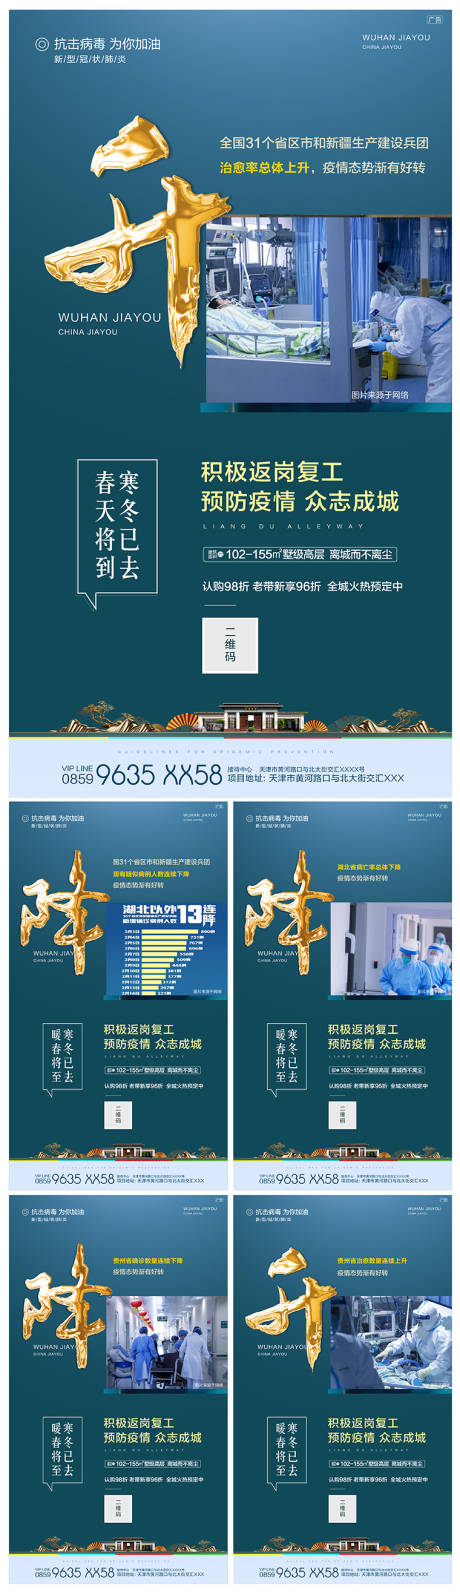 武汉加油房地产防疫移动端海报系列